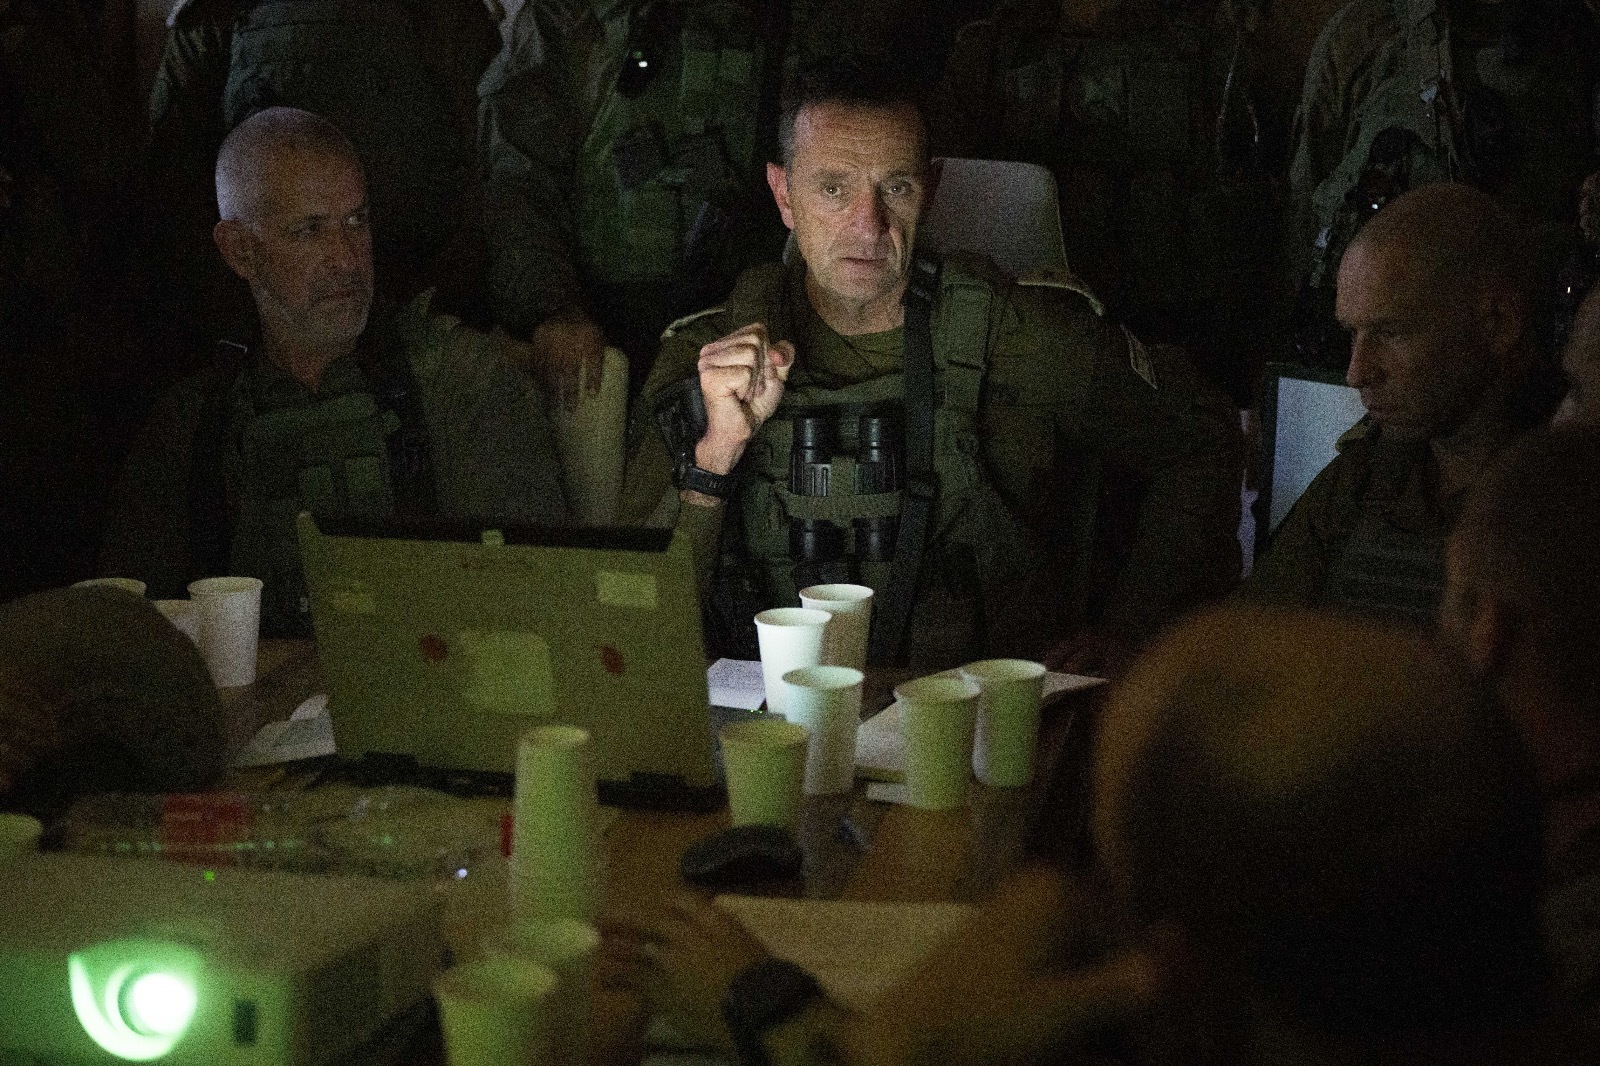 IDF: Army chief Halevi, Shin Bet head Bar entered Gaza today